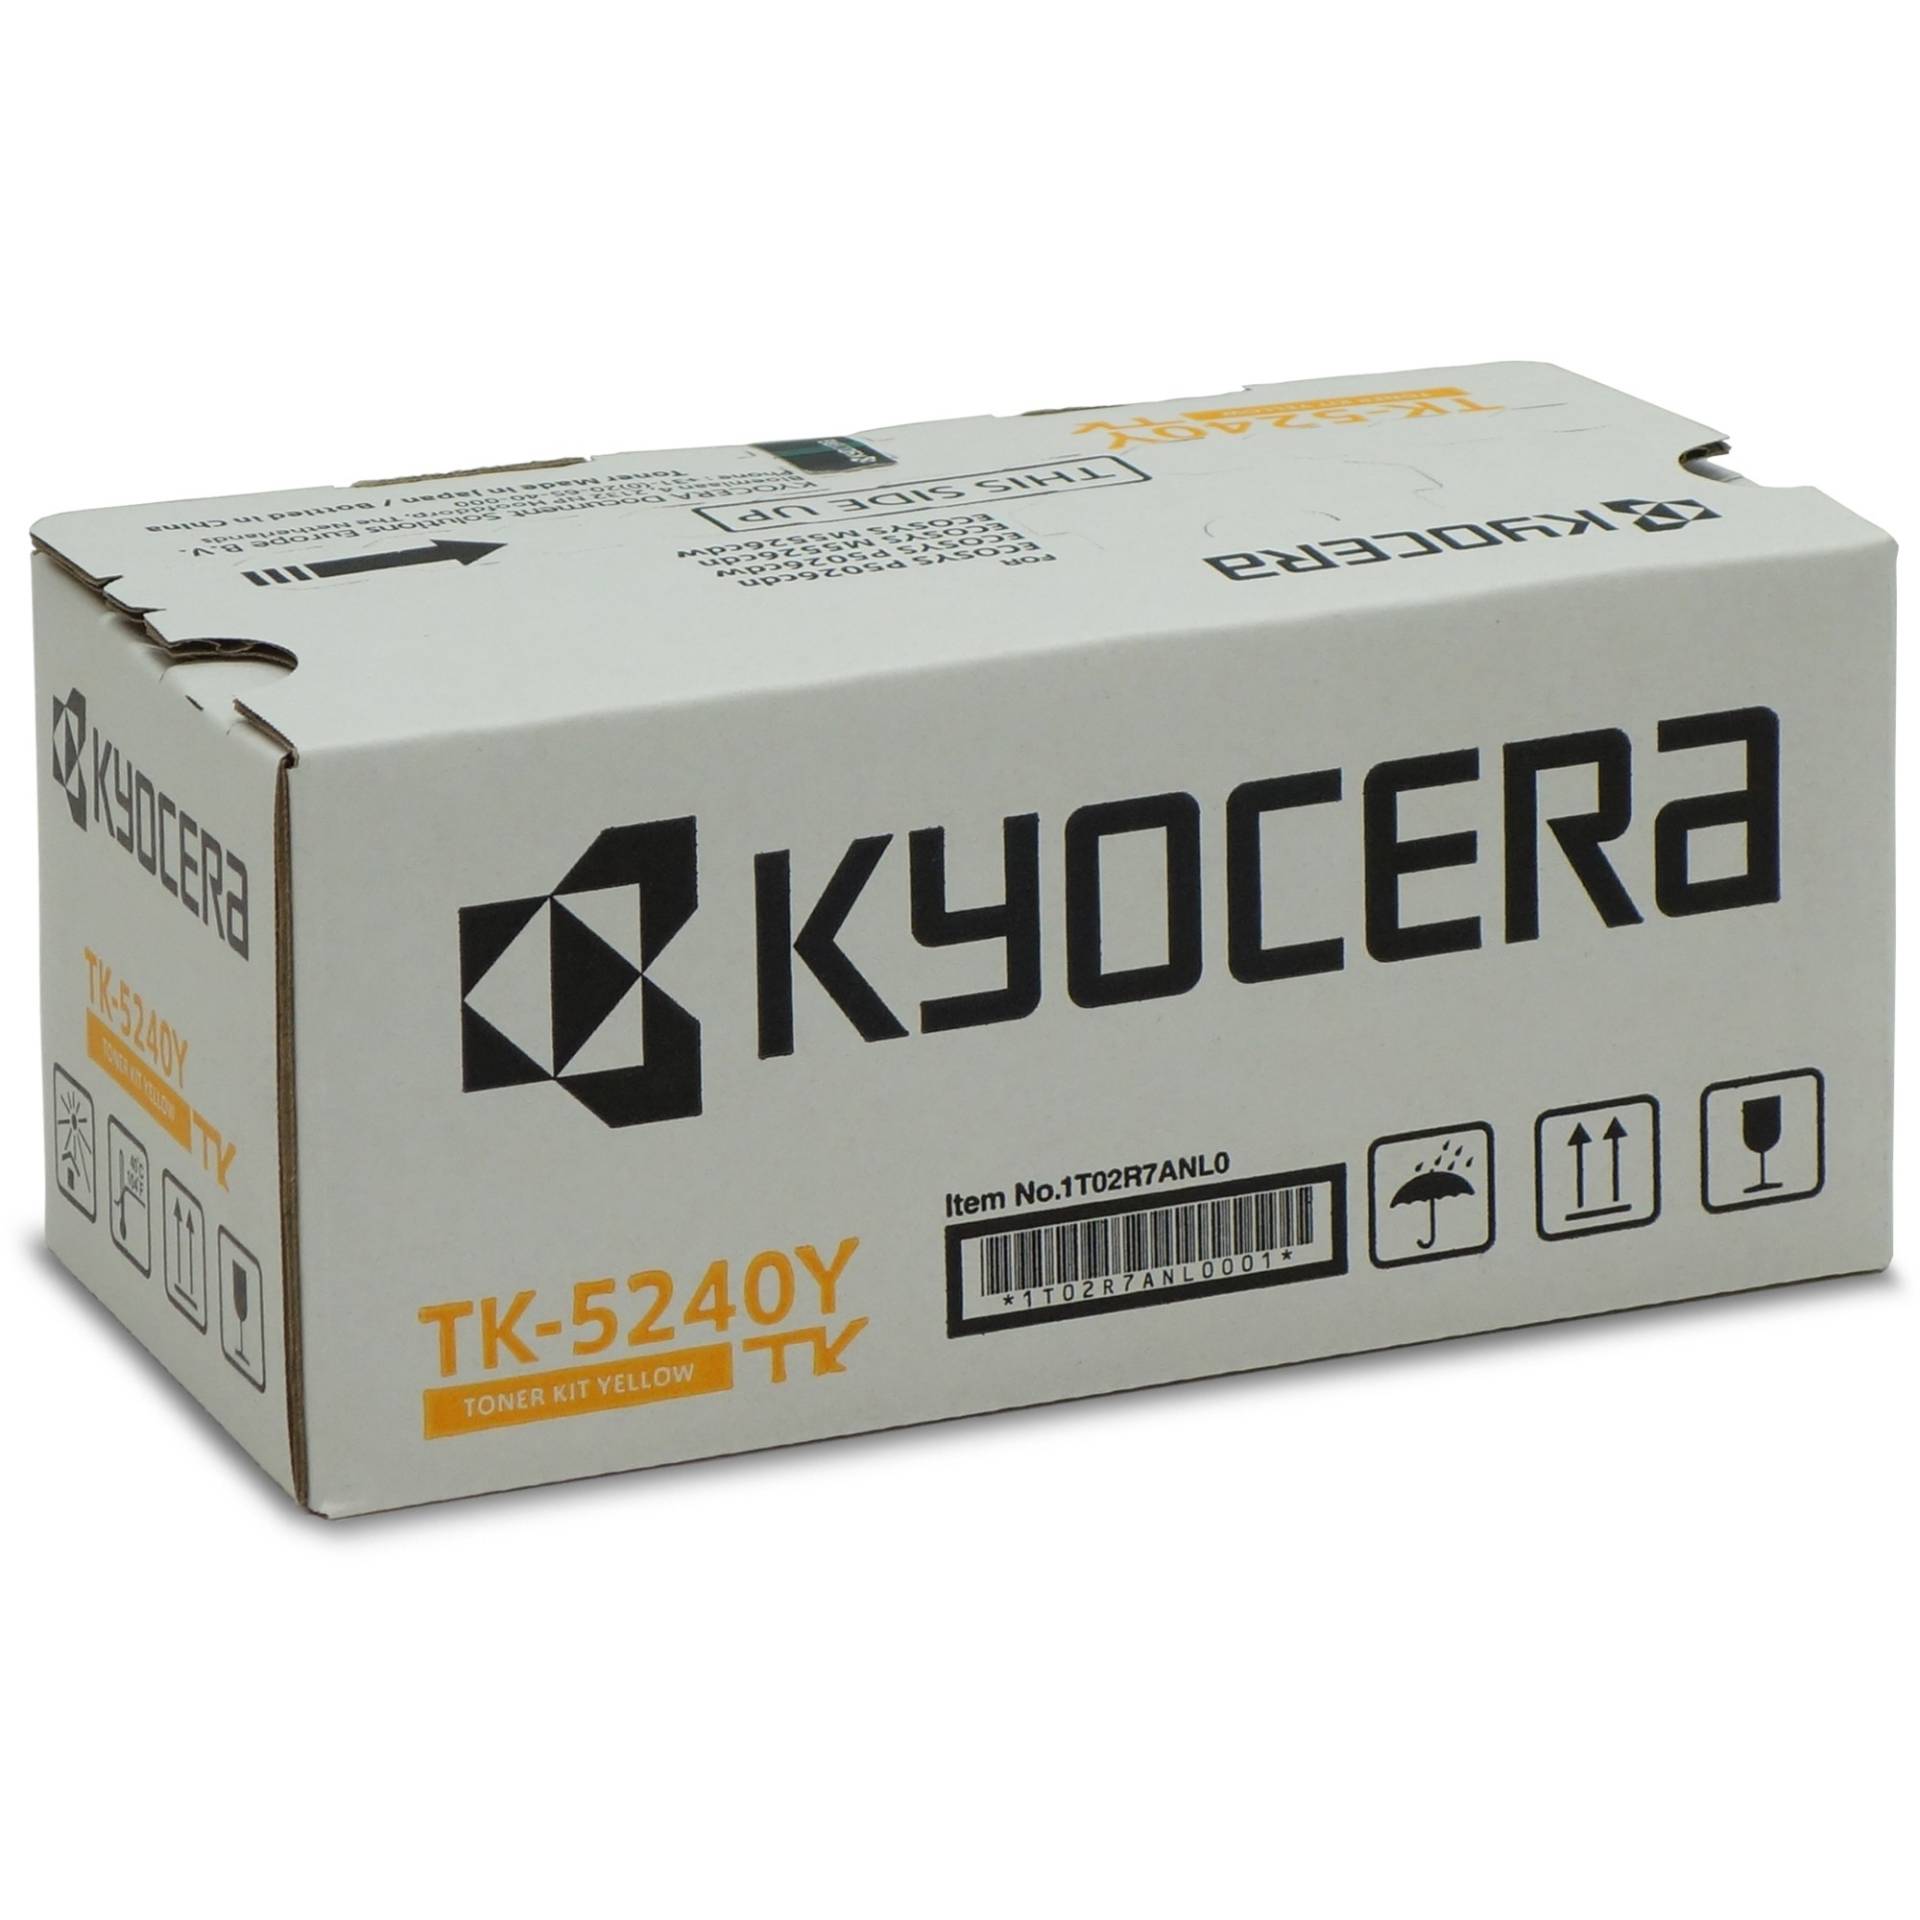 Toner gelb TK-5240Y von Kyocera